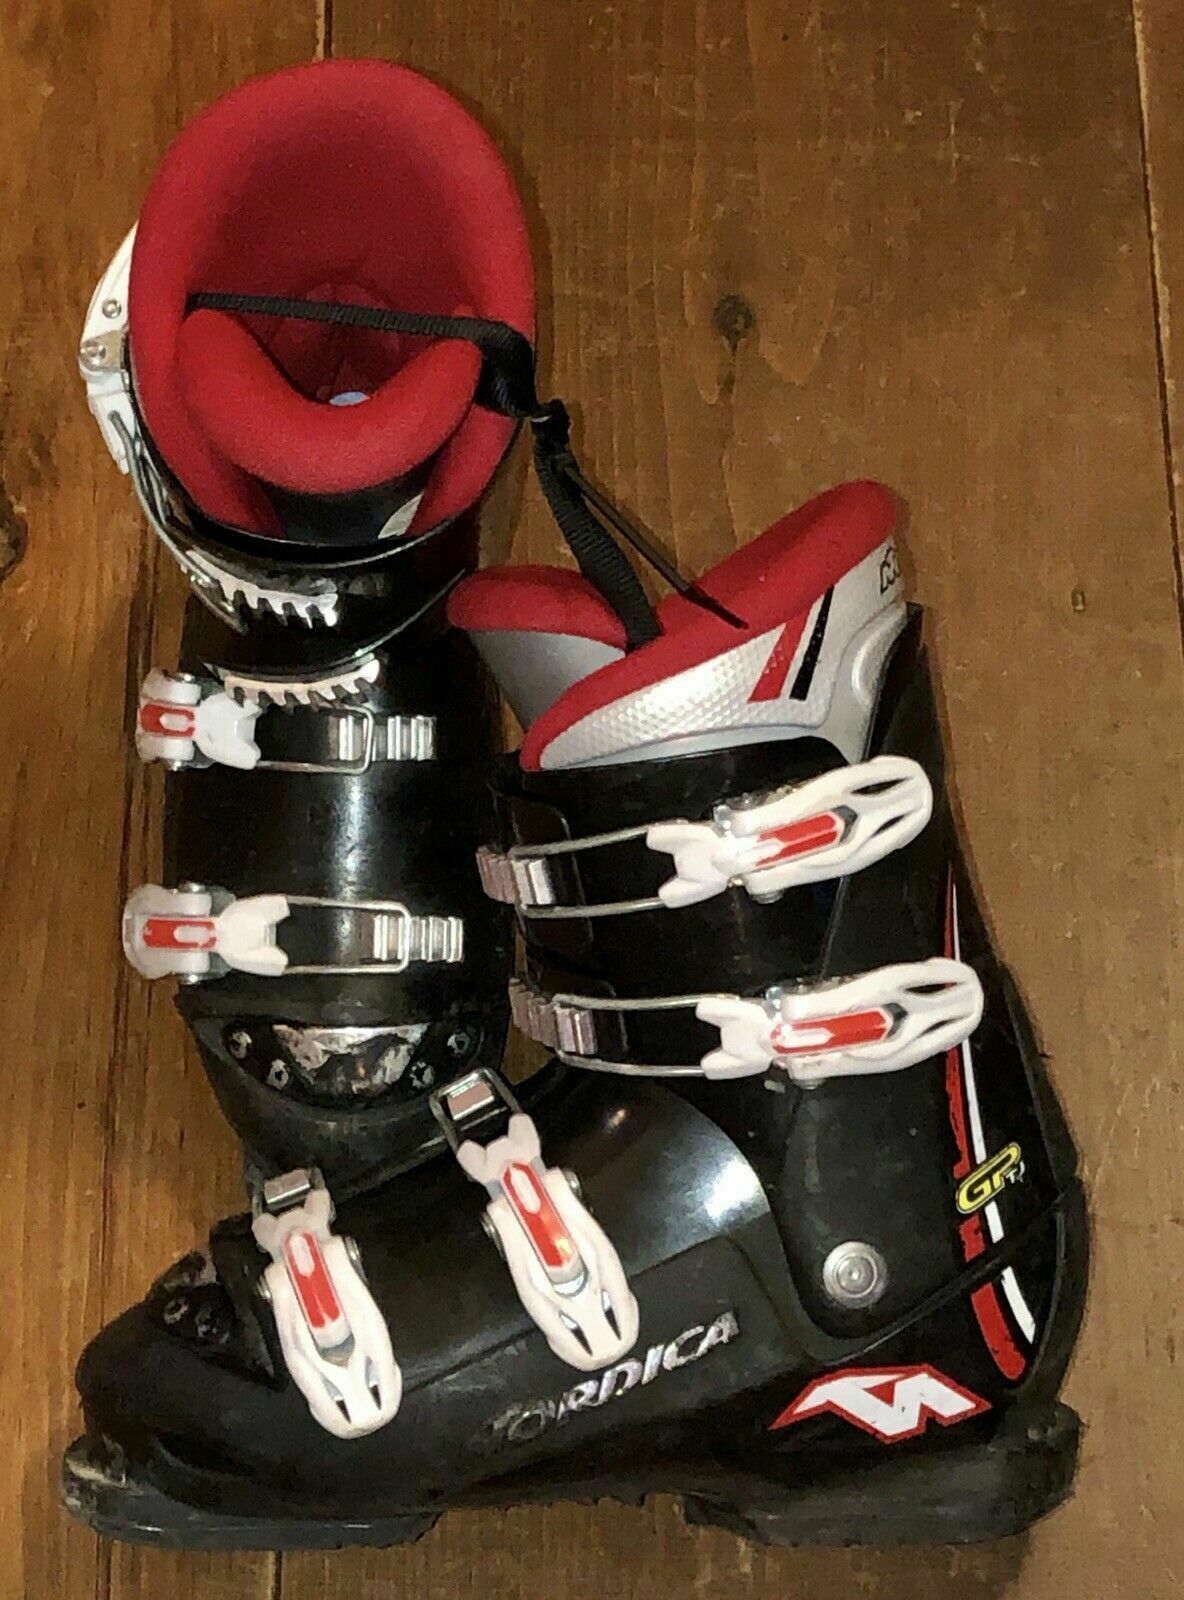 Nordica Gp Junior Ski Boots, Mondo 20 21 22 23 24 25 26 Available